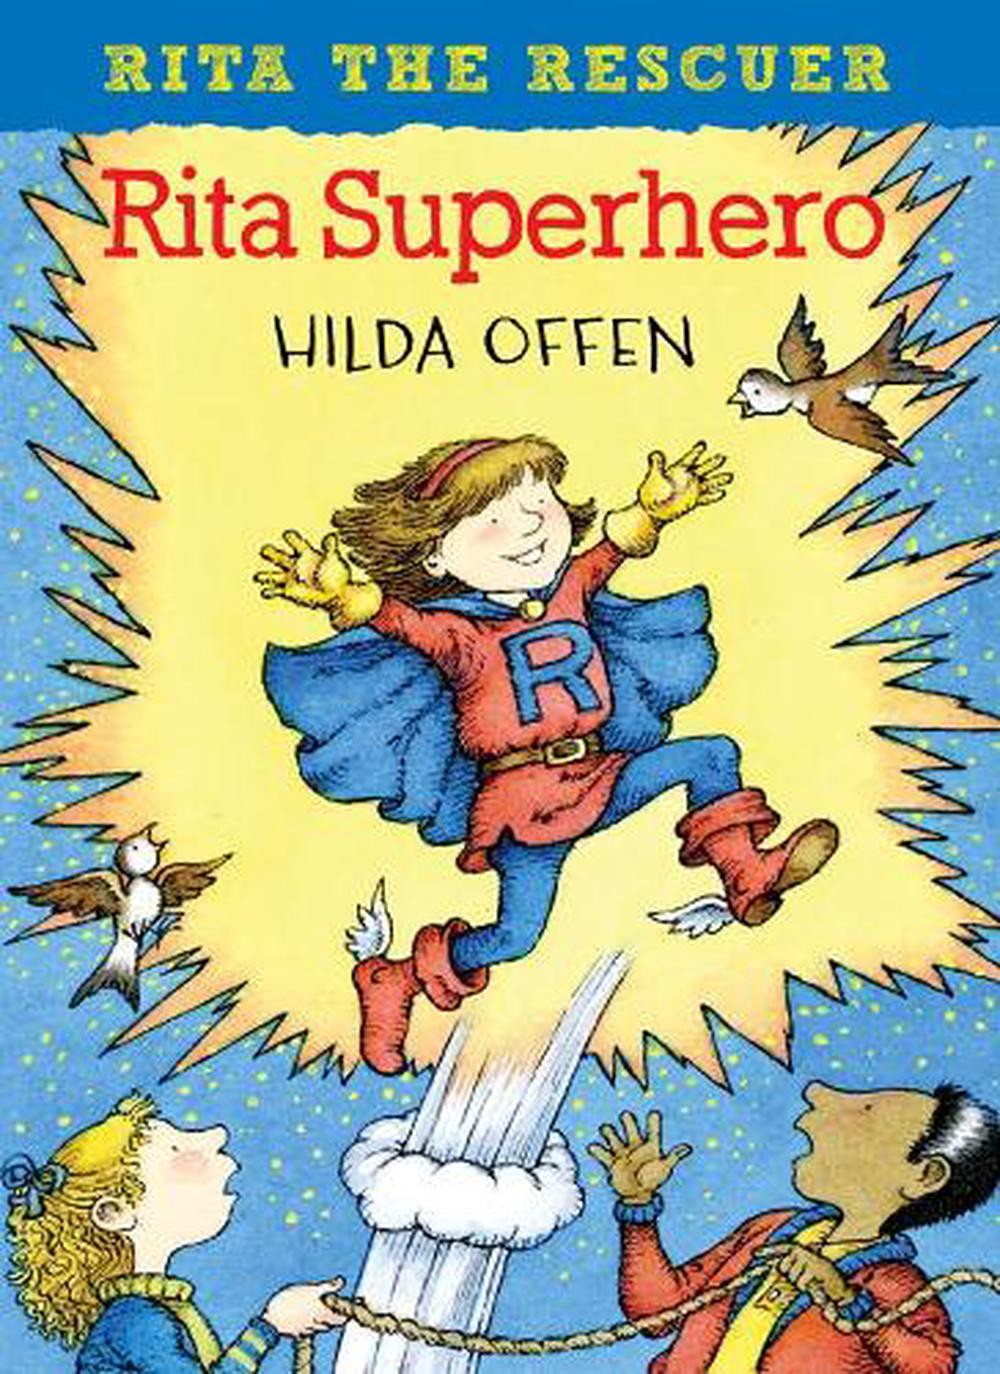 Rita the Rescuer by Hilda Offen